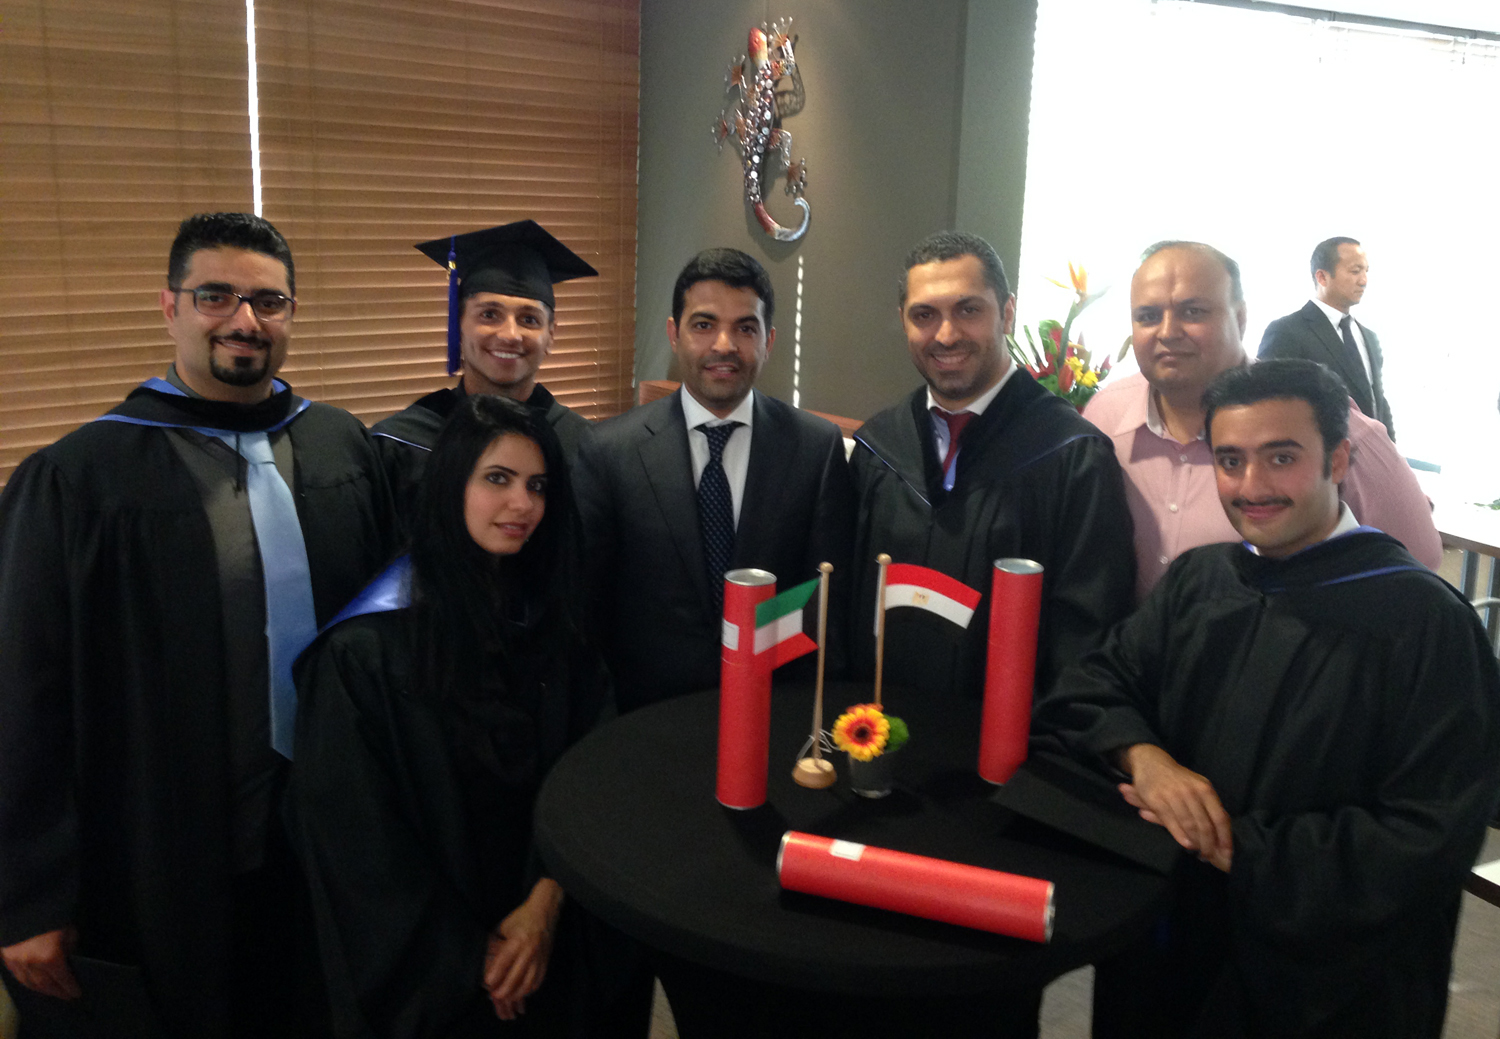 Kuwaiti students graduate from Maastricht university